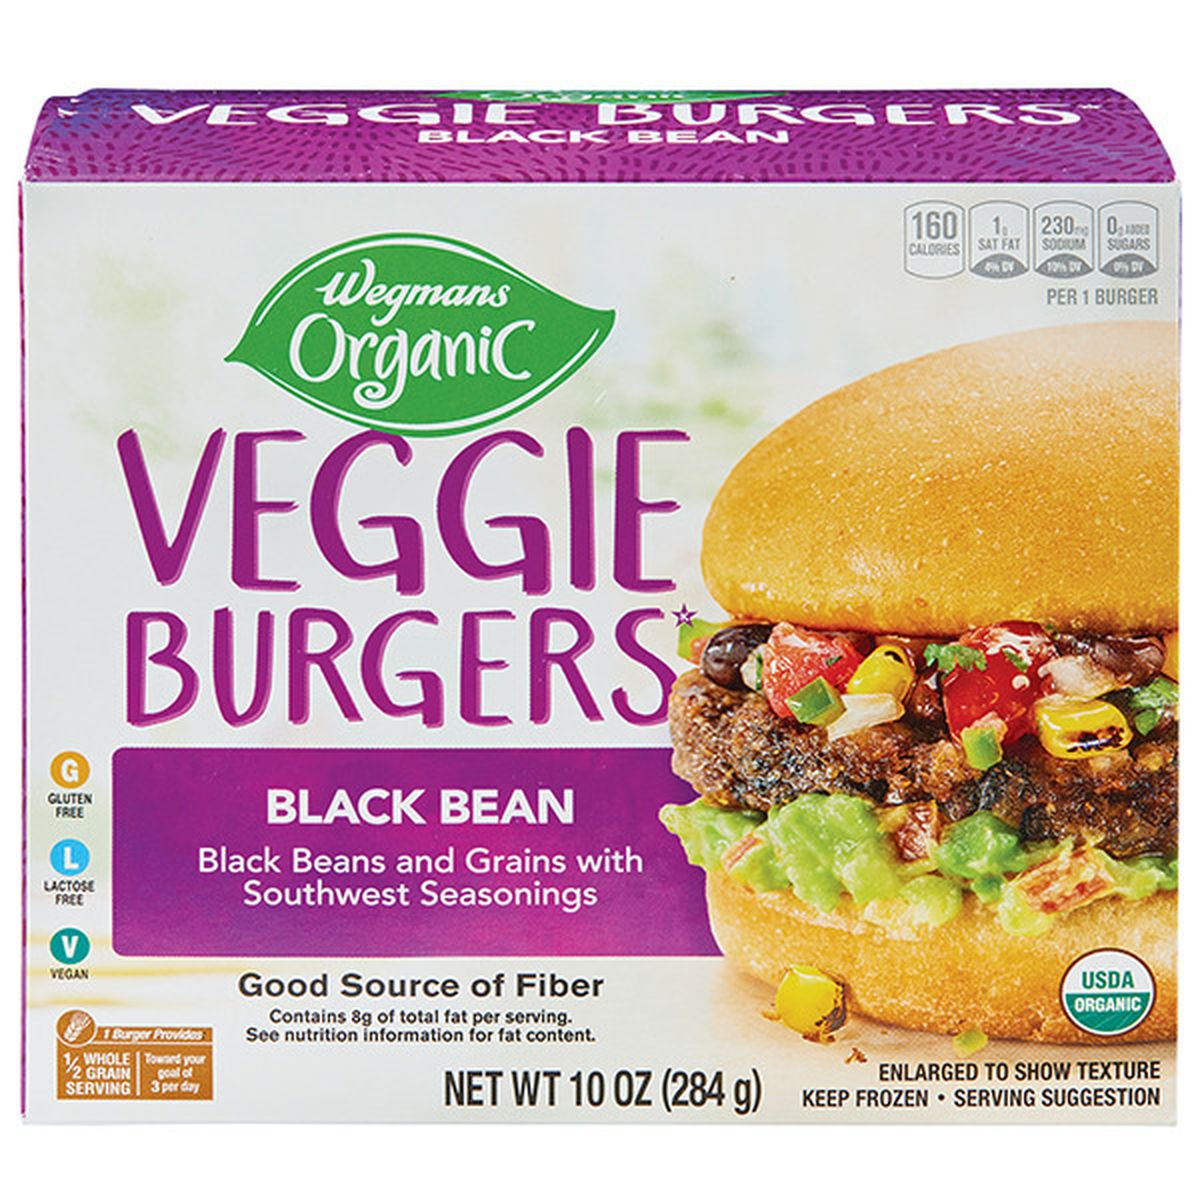 Calories in Wegmans Organic Black Bean Veggie Burgers